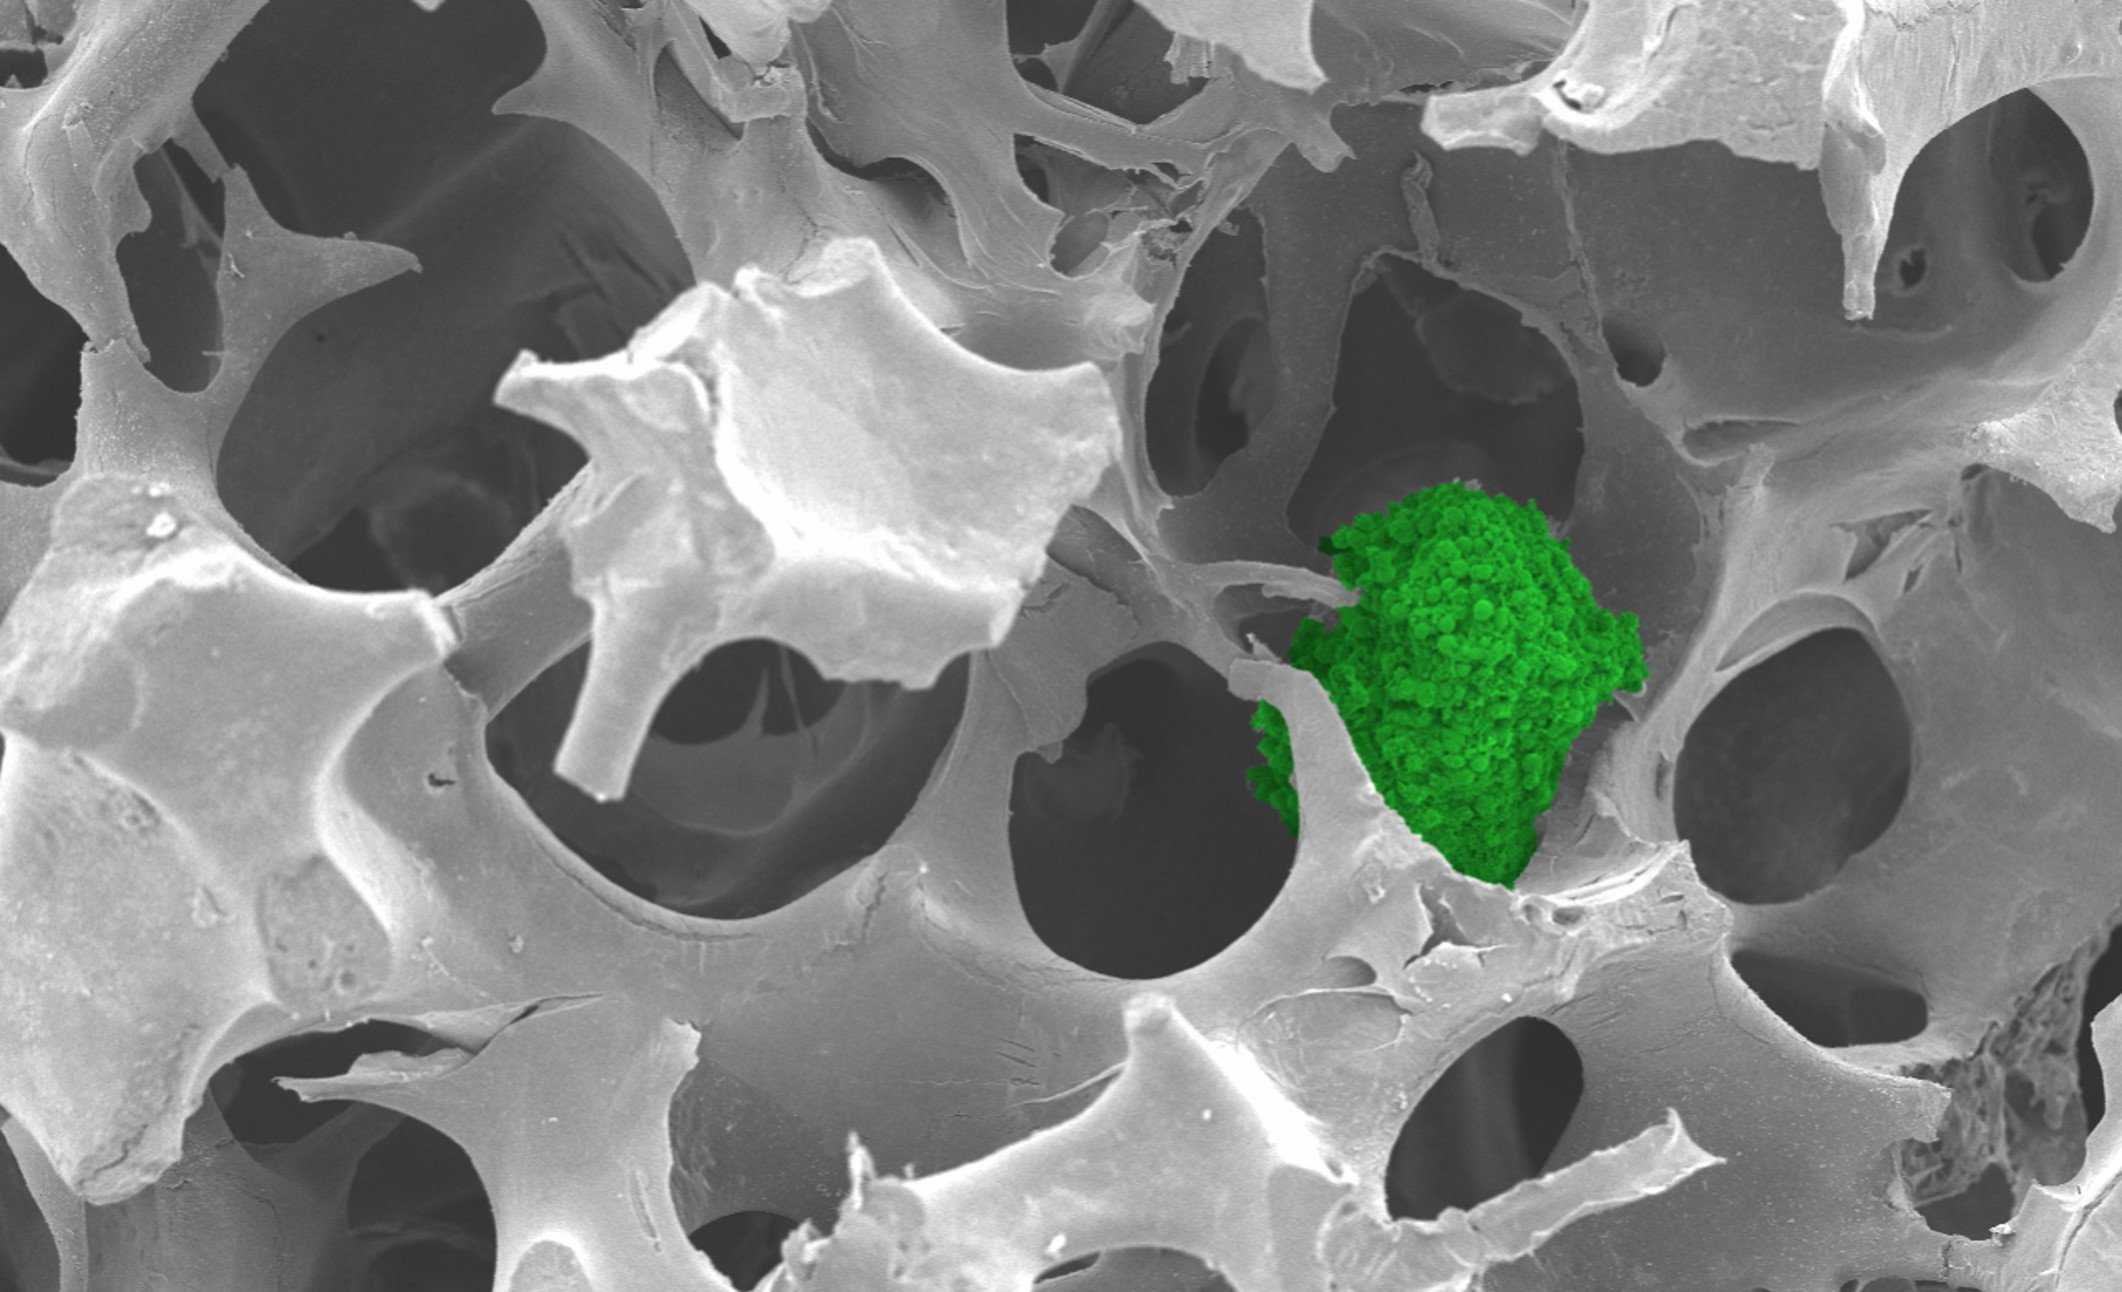 Cancer spheroid growing in the ABS sponge